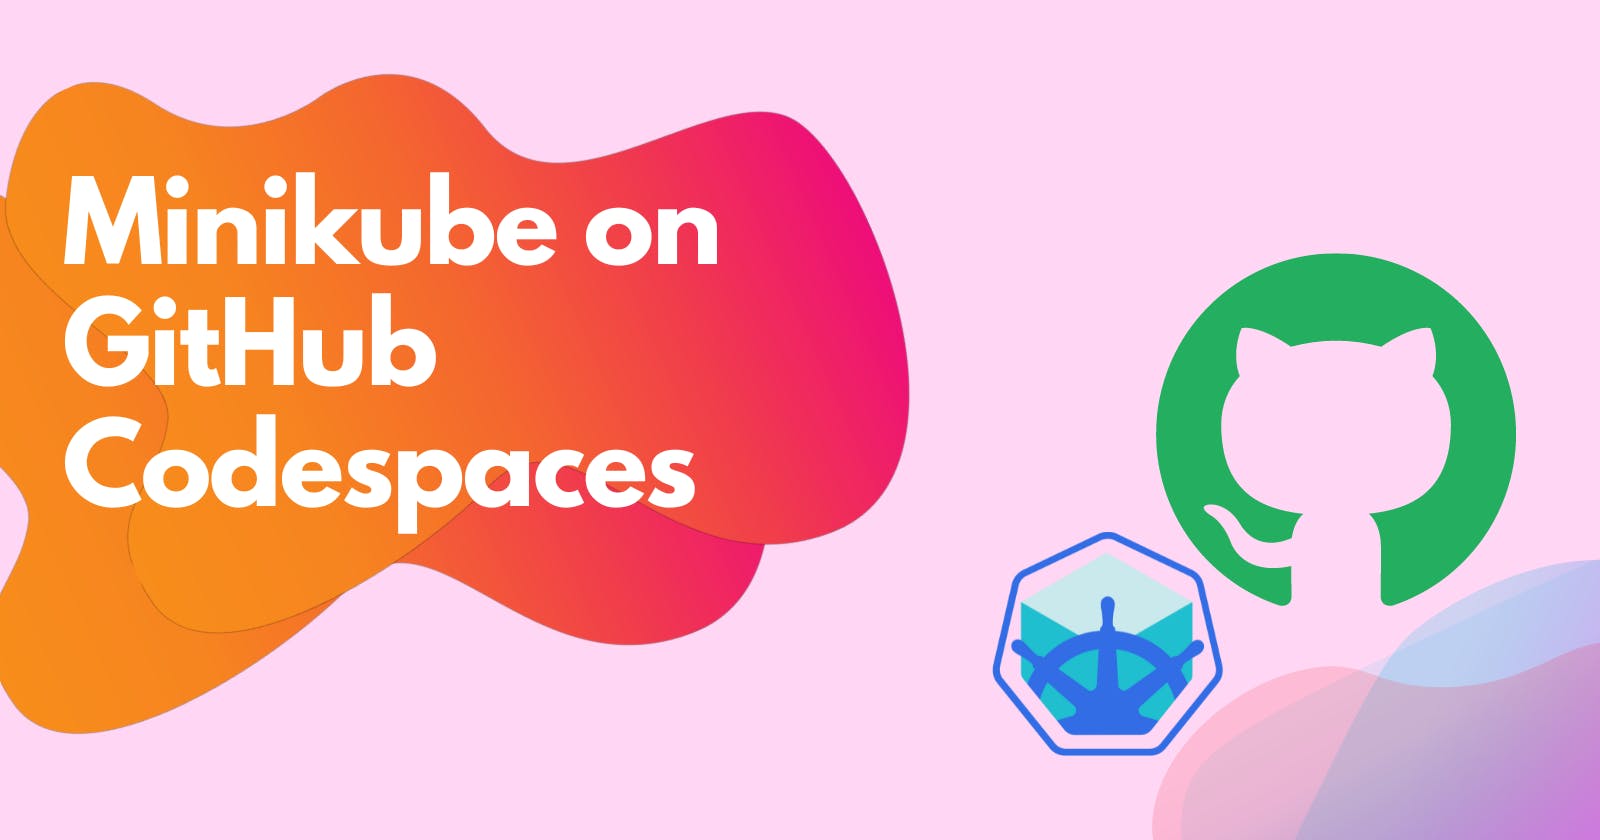 How to use Minikube on GitHub Codespaces